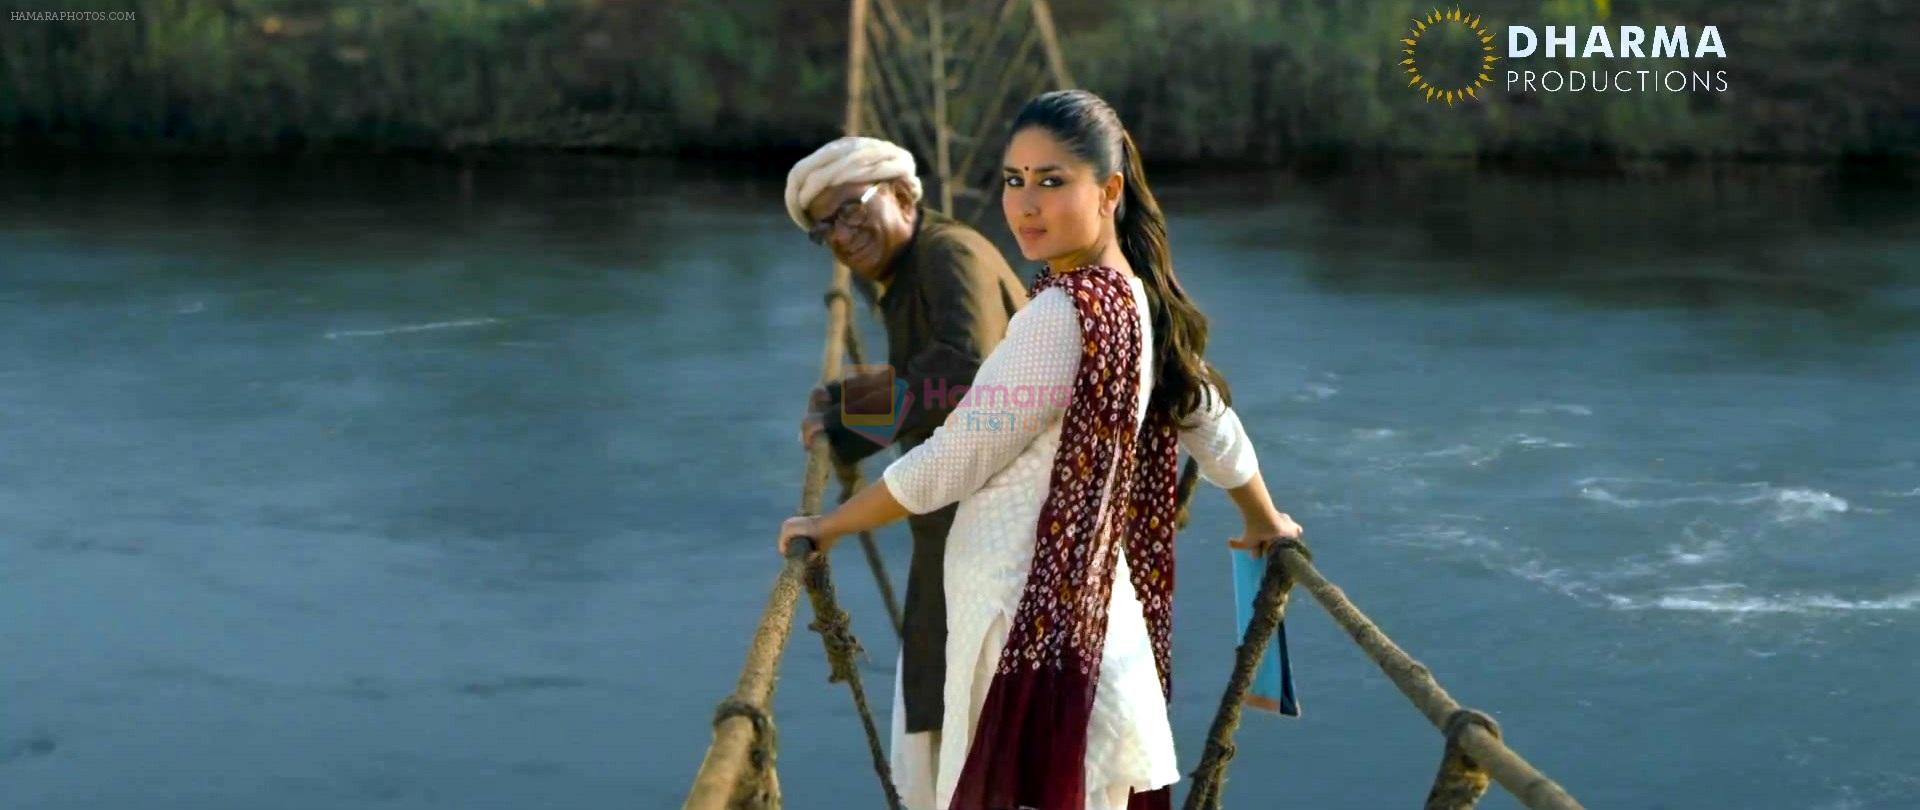 Kareena Kapoor in still from the movie Gori Tere Pyaar Mein